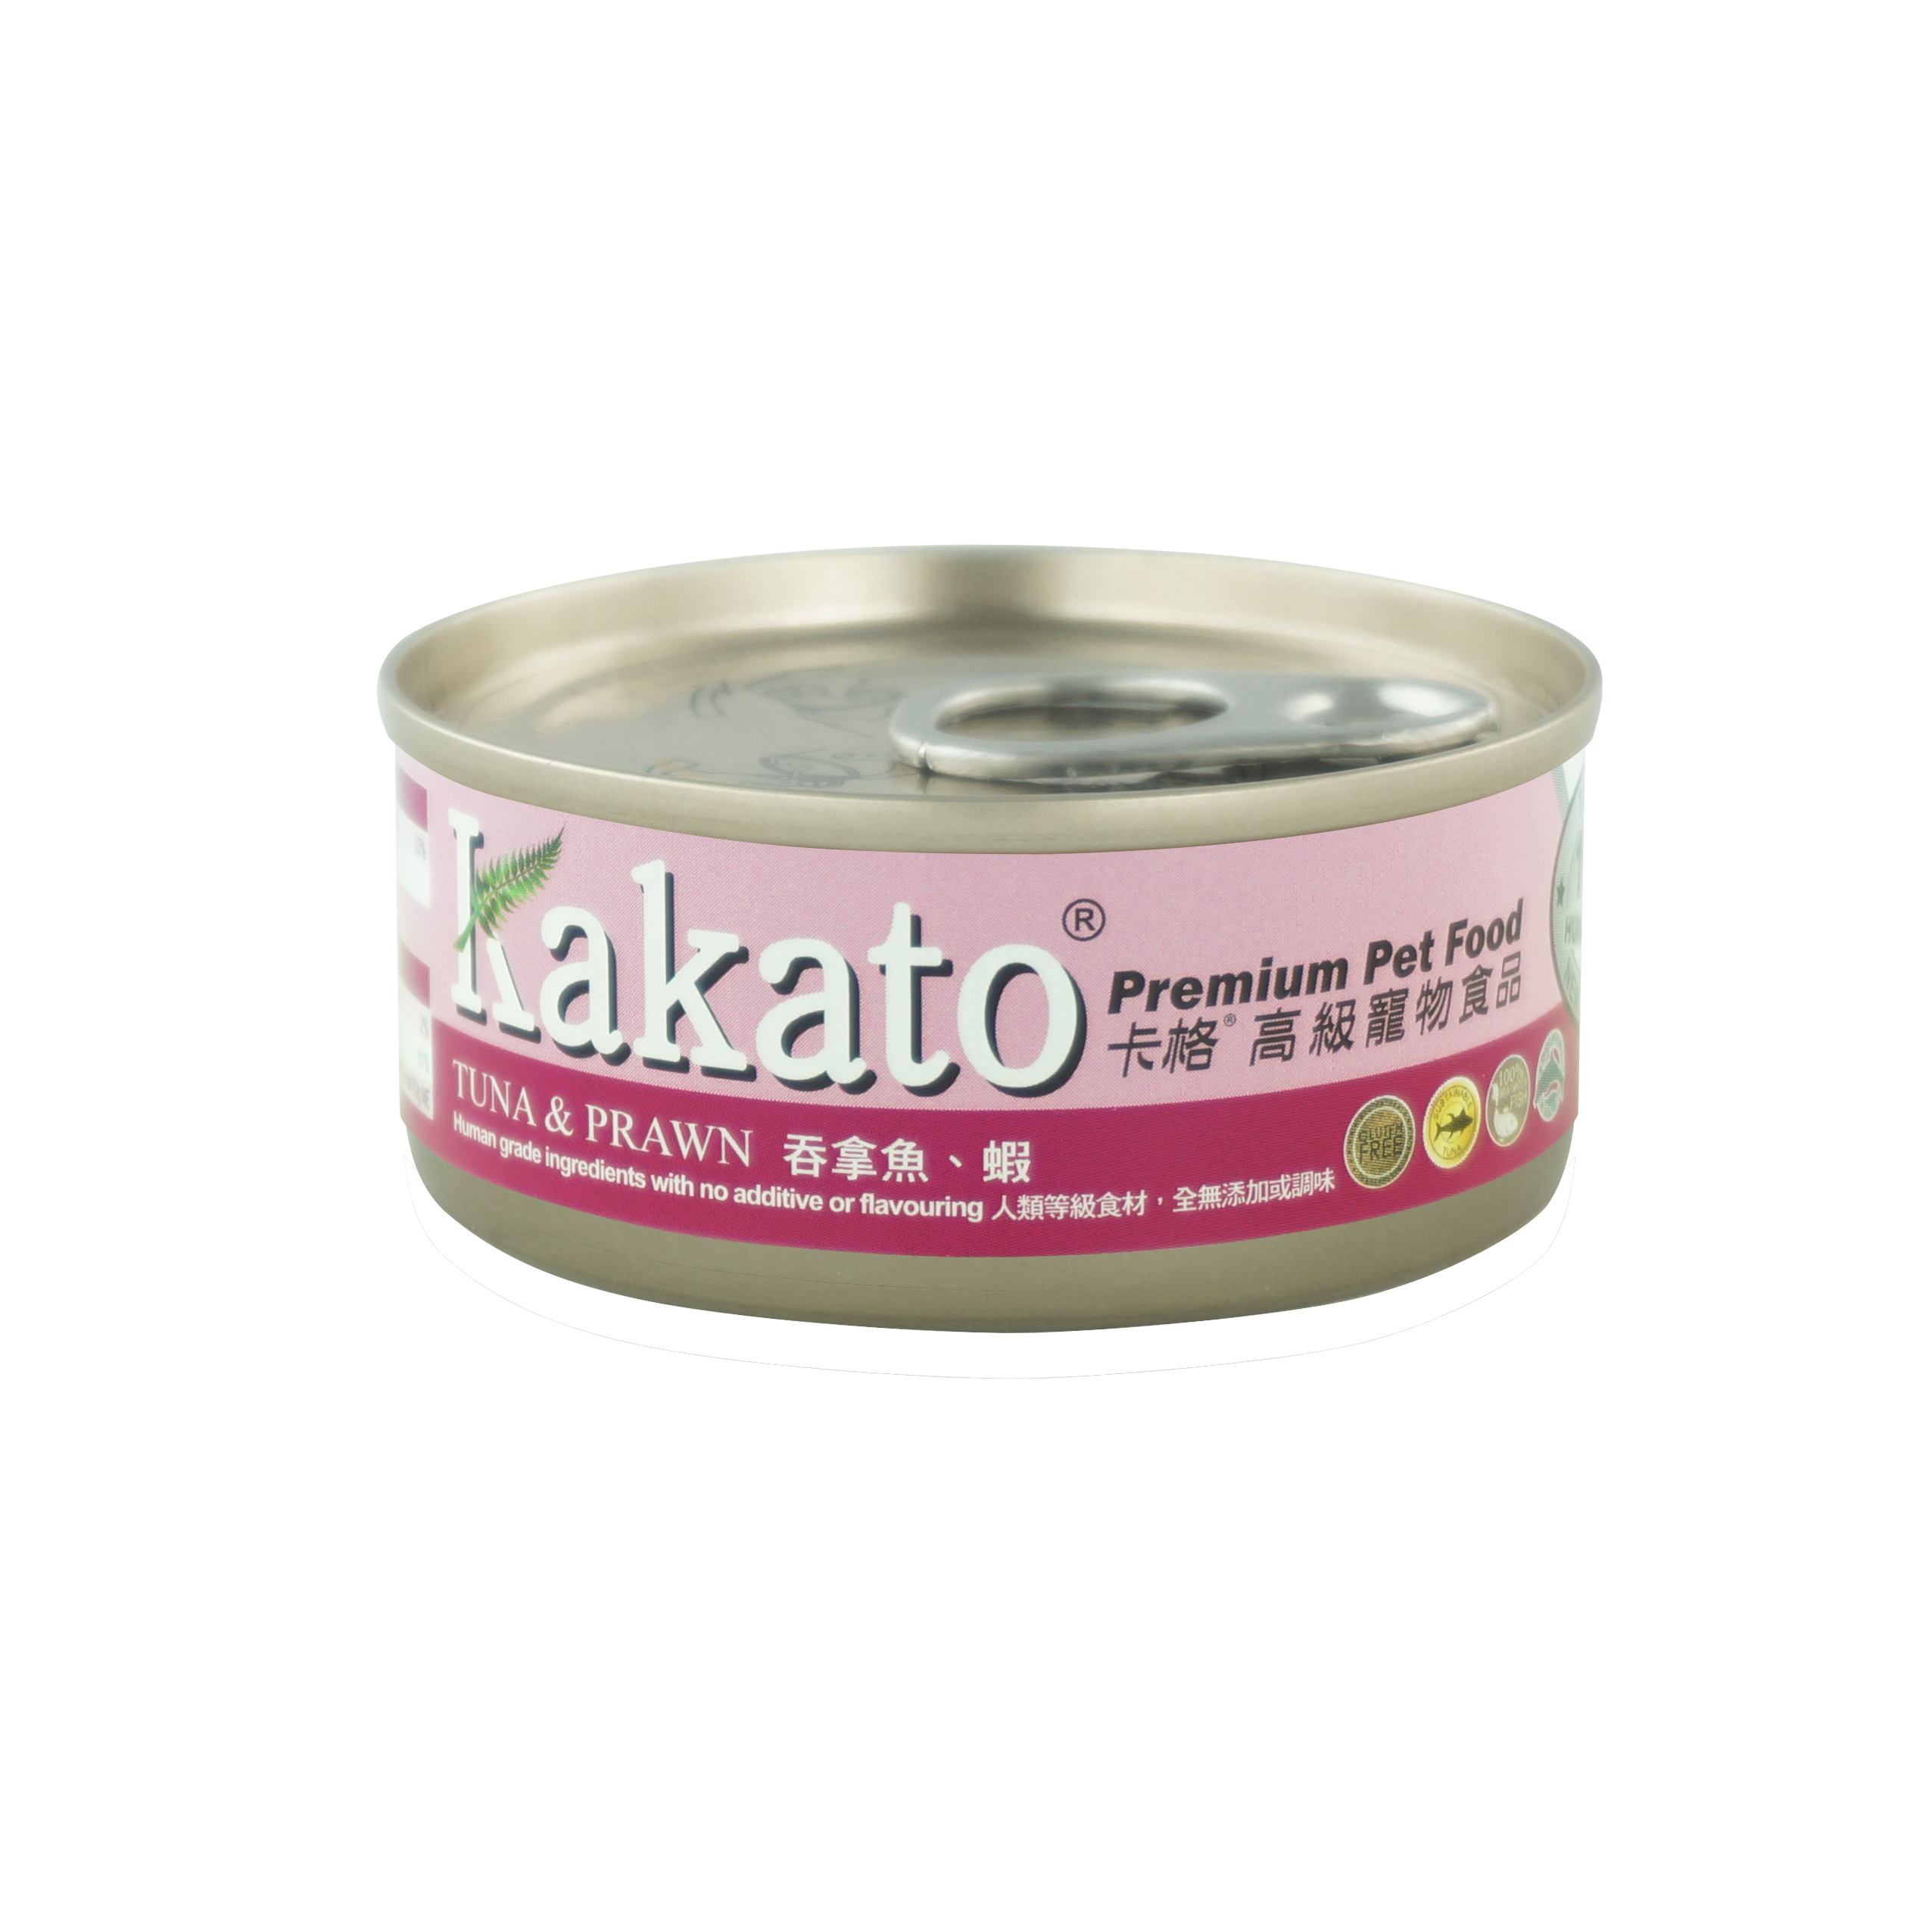 kakato tuna prawn product shot